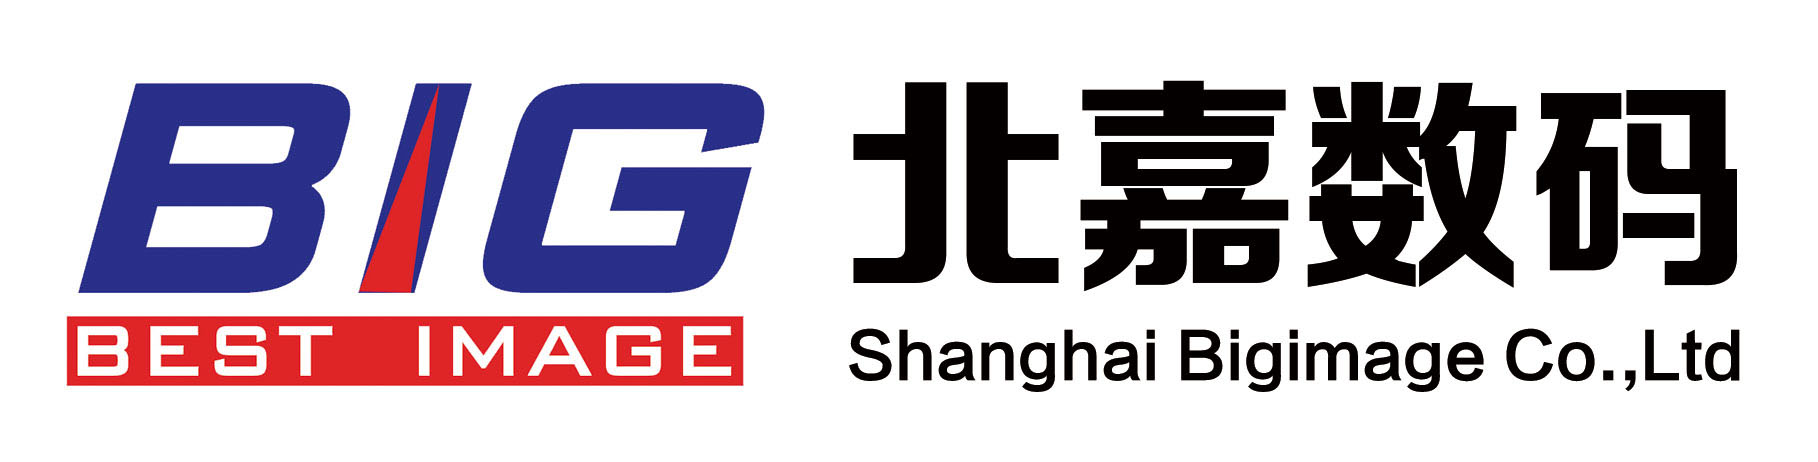 上海北嘉数码影像科技股份有限公司LOGO